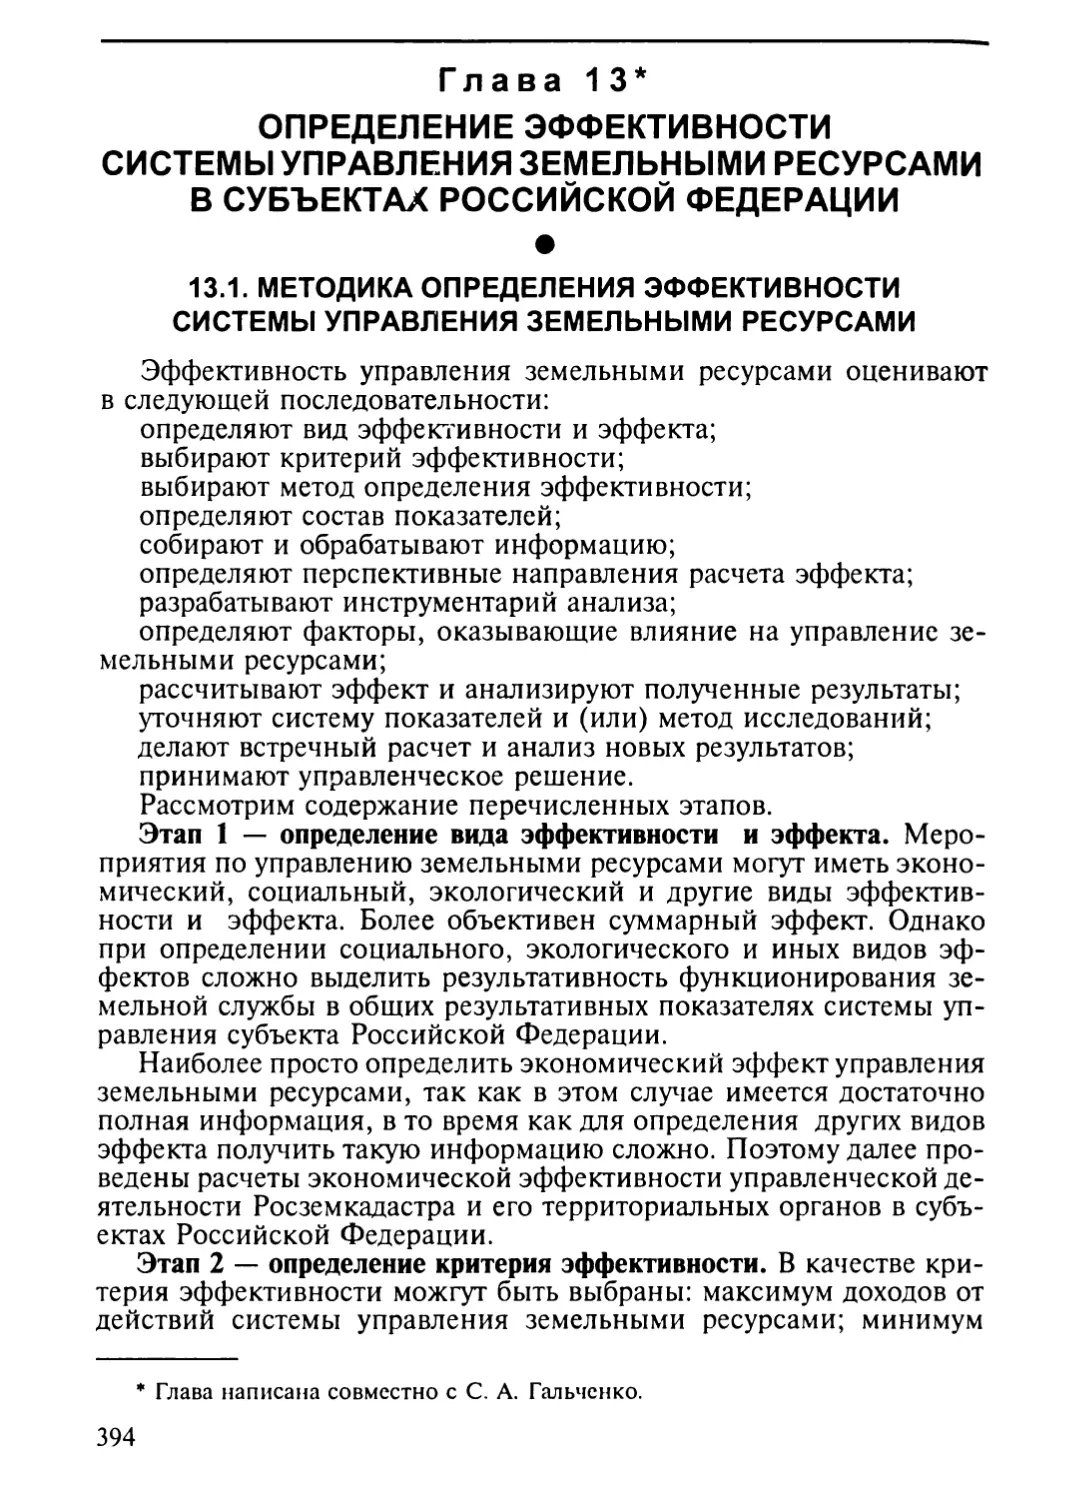 Глава 13. Определение эффективности системы управления земельными ресурсами в субъектах Российской Федерации